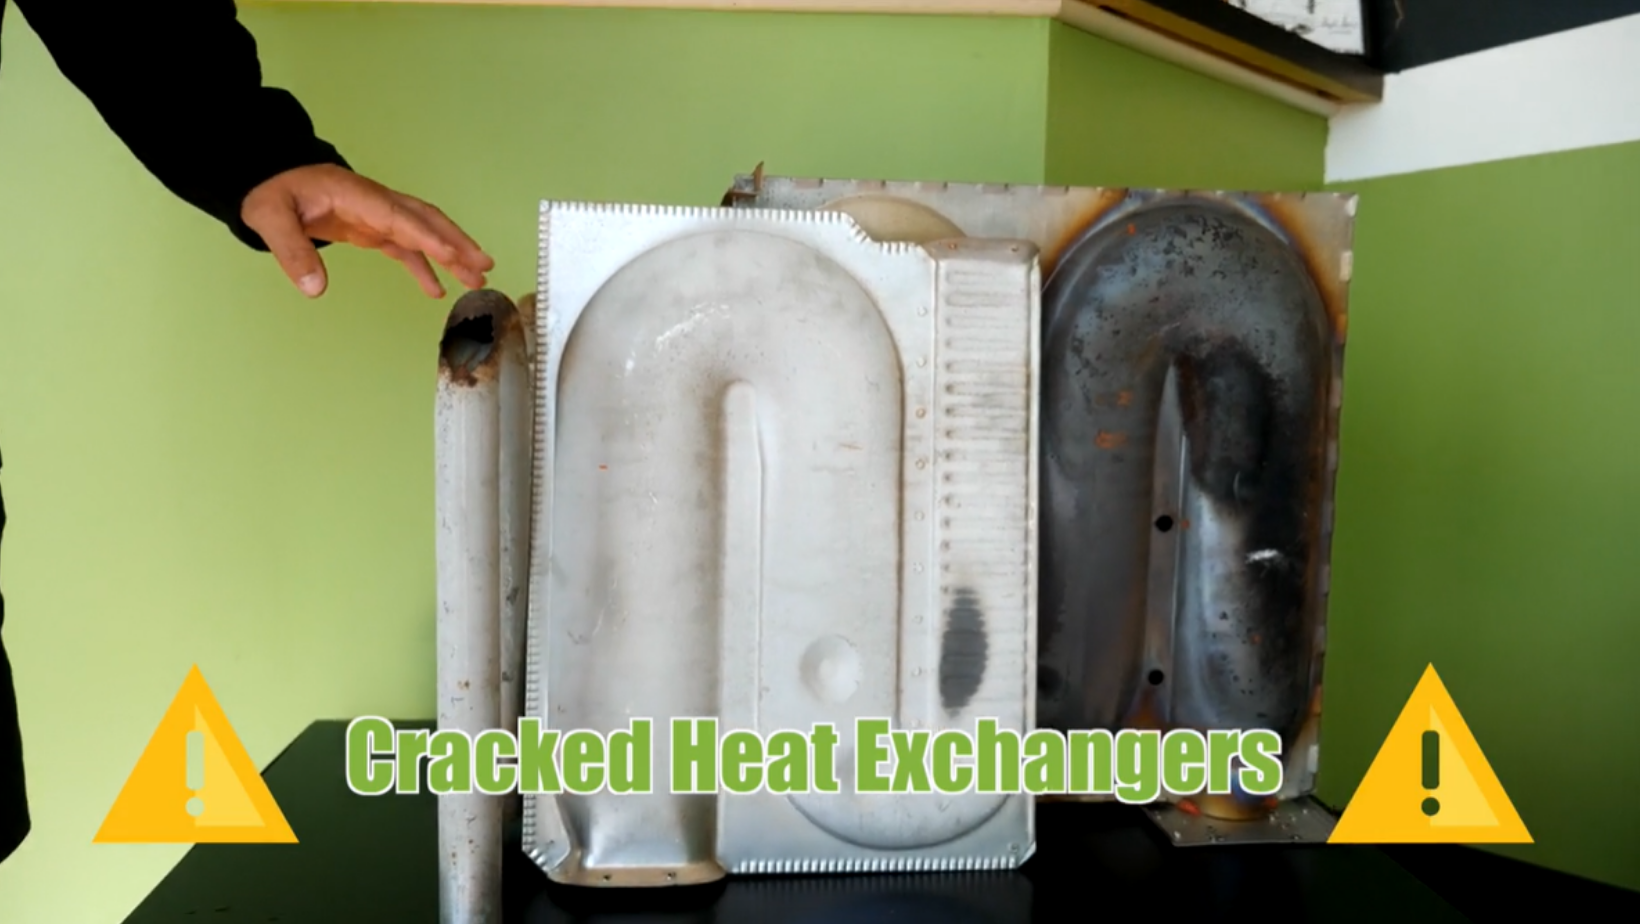 heater tune ups prevent cracked heat exchangers